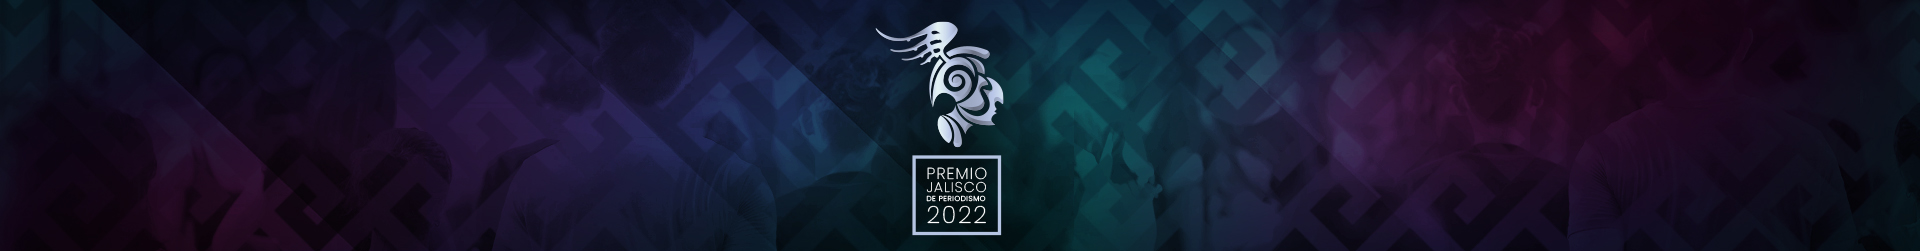 Encabezado Premio Jalisco de Periodismo 2022